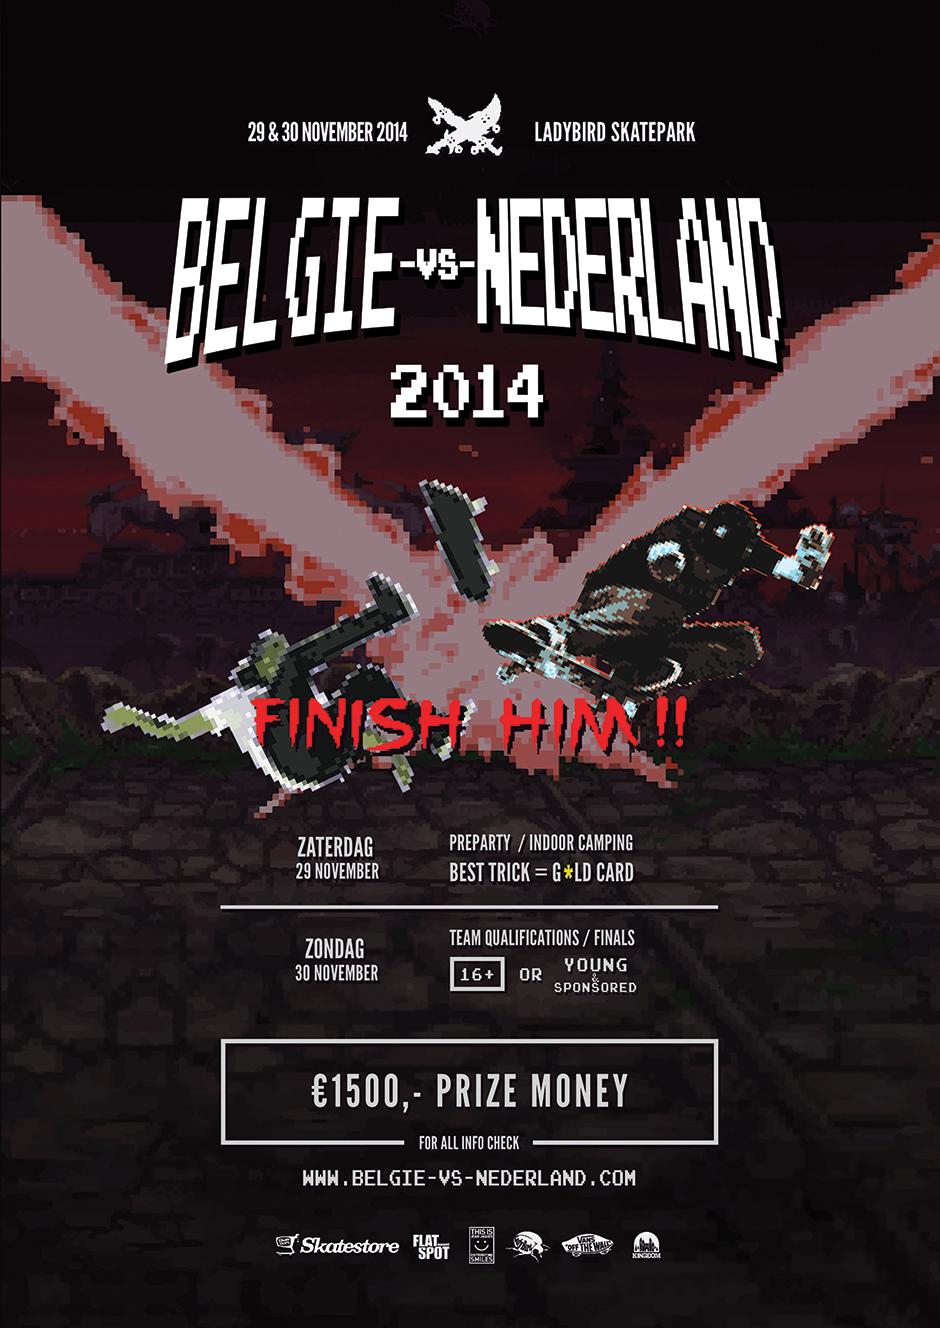 nederland-vs-belgie-ladybird-skatepark-flyer-2014